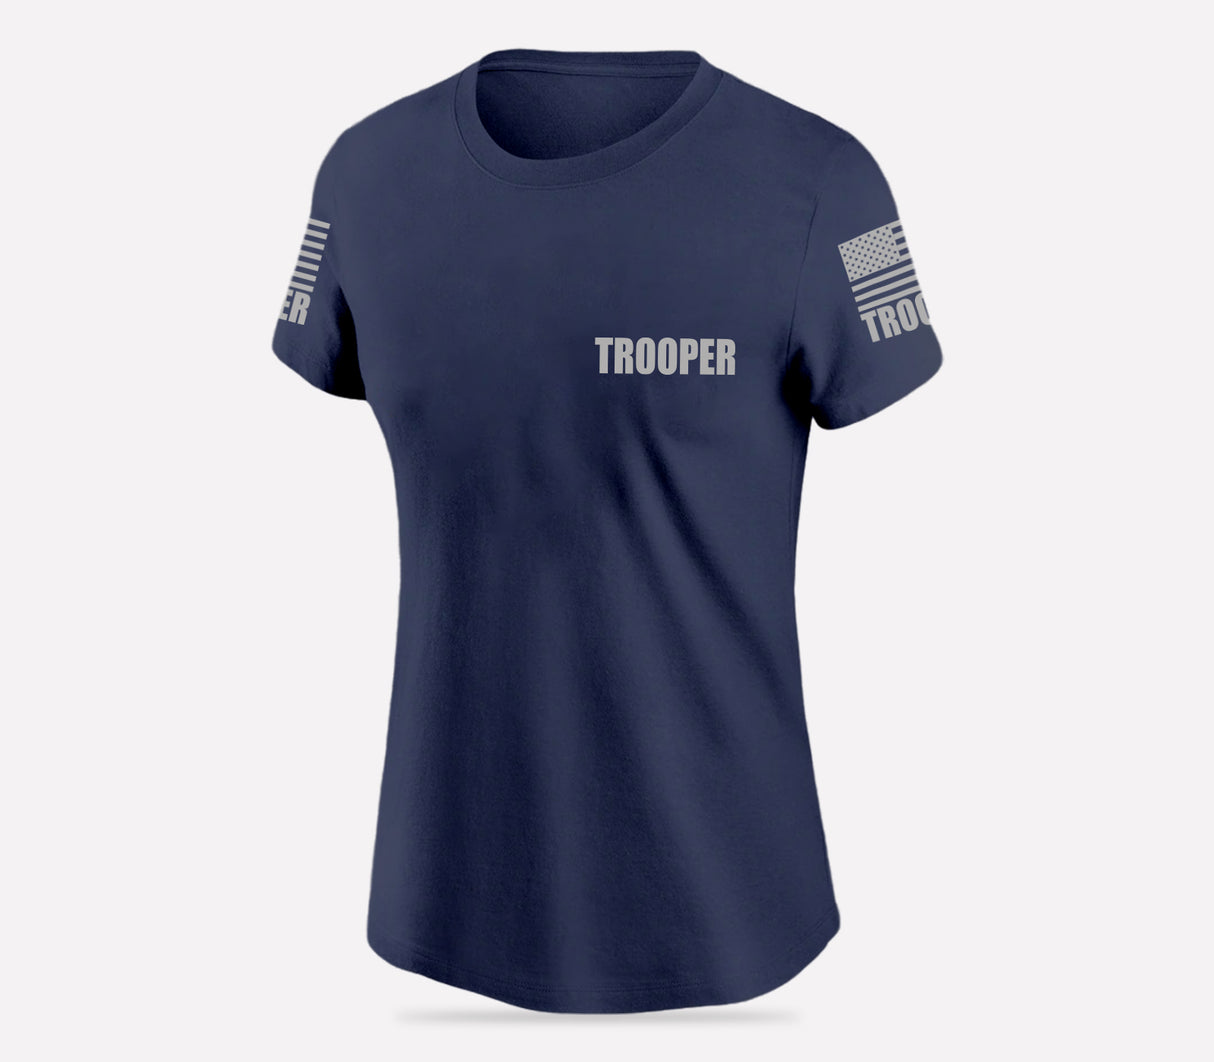 Navy Blue Trooper Women's Shirt - Short Sleeve - FEDS Apparel